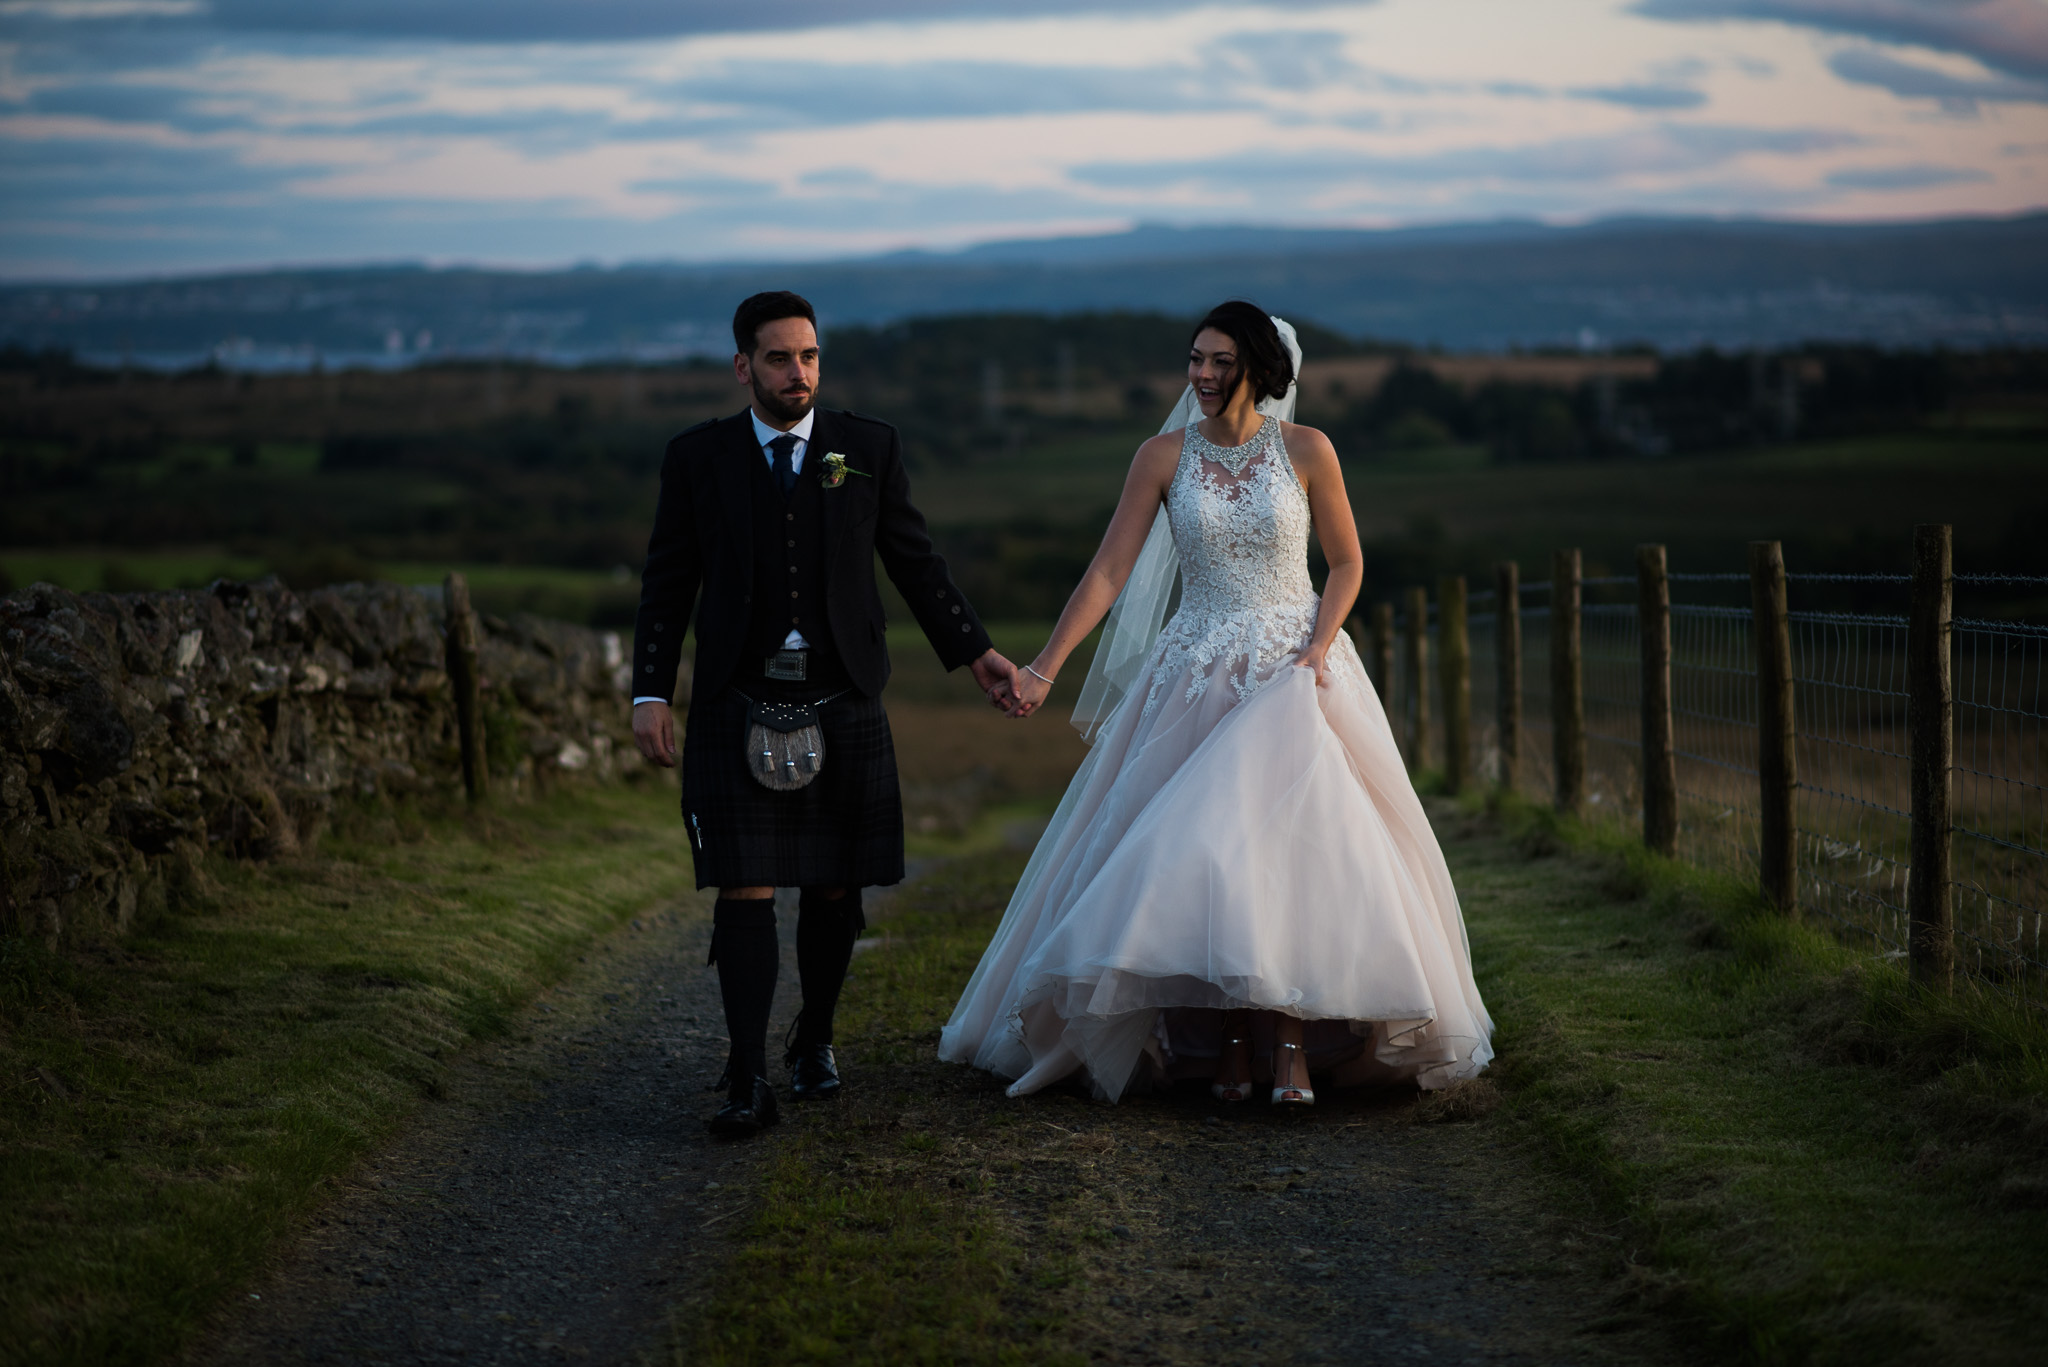 A Cruin Wedding near Loch Lomond